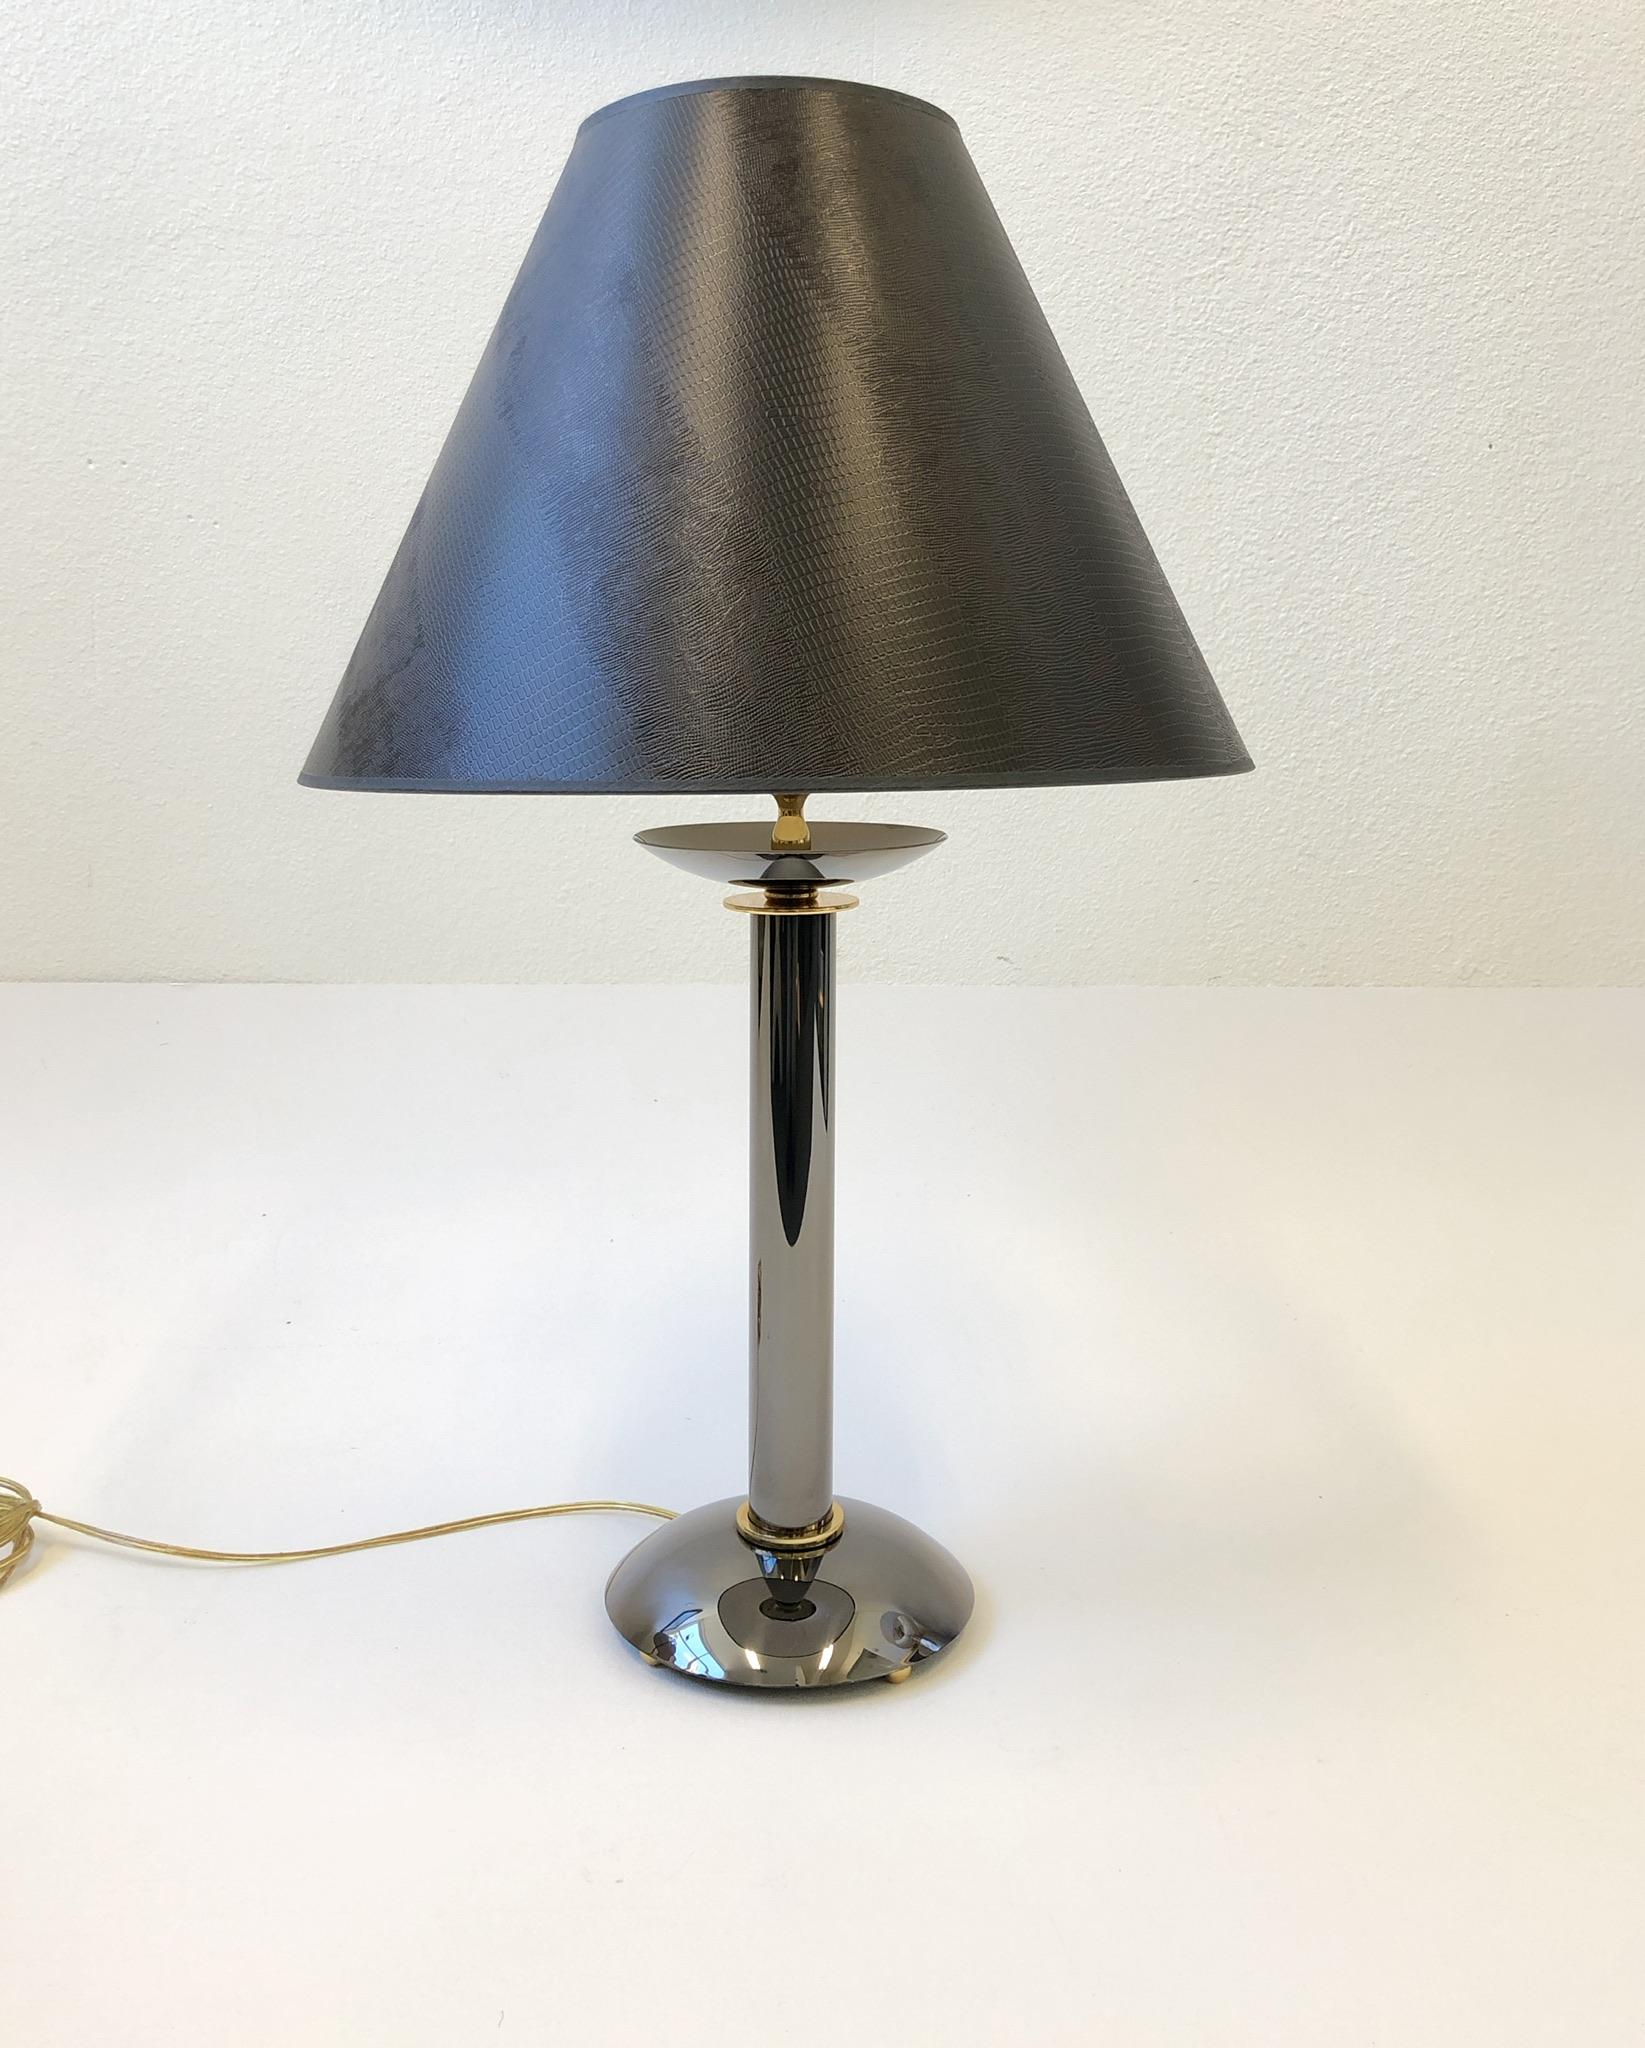 Une paire rare de lampes de table en bronze et laiton conçues par Karl Pringer dans les années 1980. Il est rare de trouver ces objets sous forme de lampes, ce sont généralement des chandeliers. Elles ont été refaites avec de nouvelles ferrures et